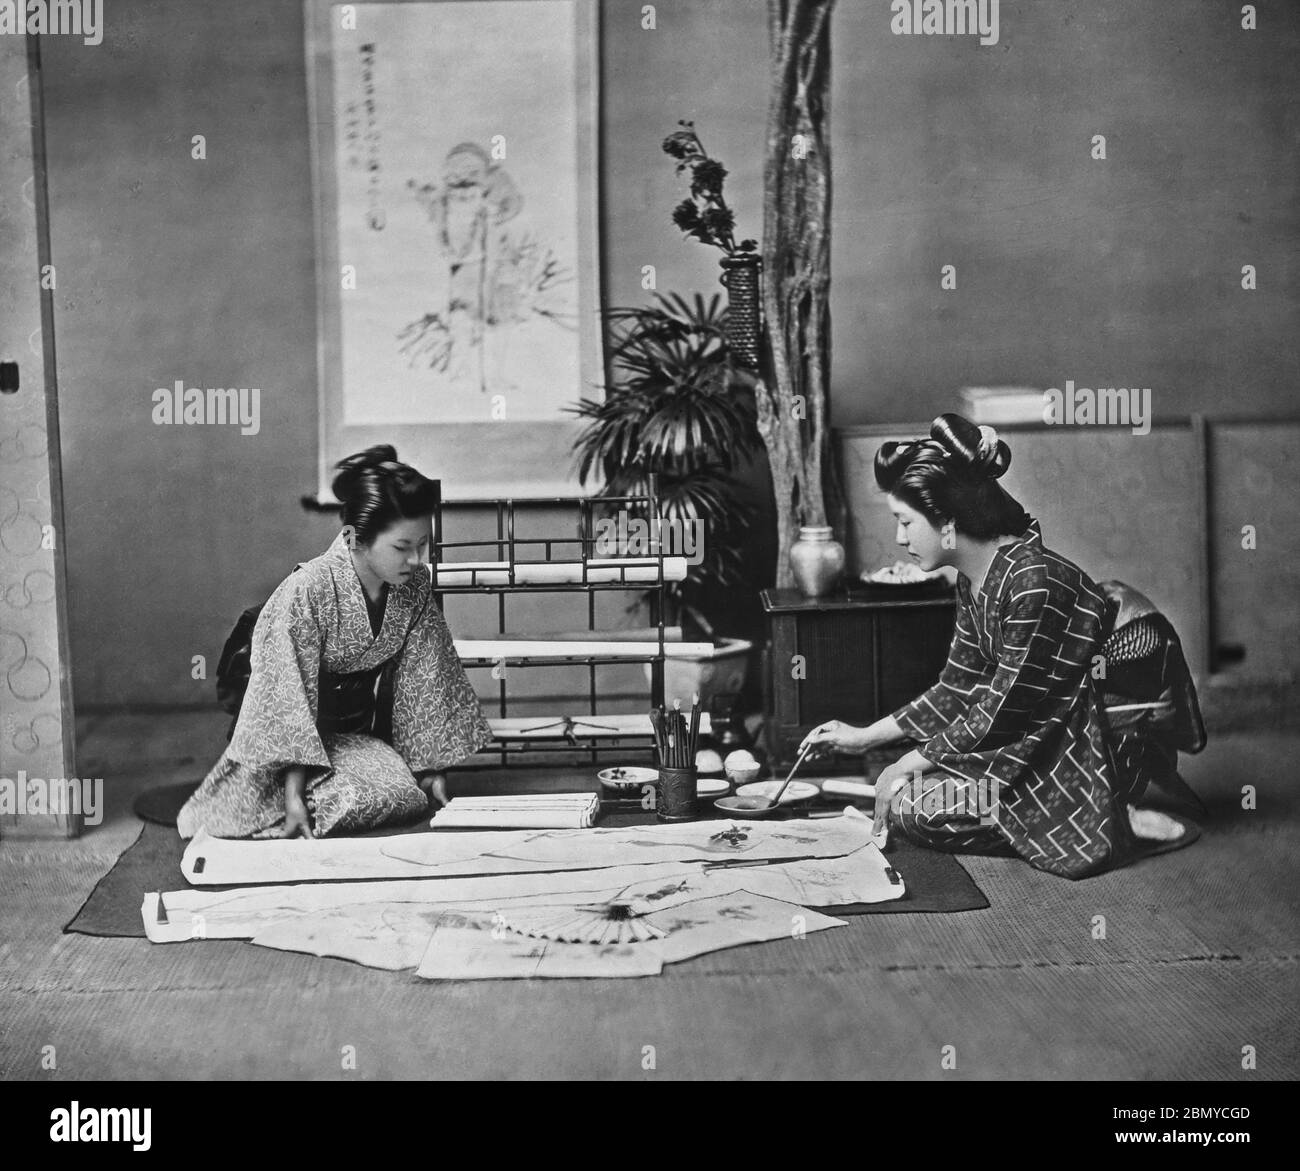 [ 1890s Japon - Calligraphie japonaise ] — Femme dans un kimono peinture sur un kakemono (掛物), un rouleau suspendu . Kakemono sont utilisés pour exposer et exposer des peintures et de la calligraphie. Ils sont généralement montés sur un support flexible avec des bords en tissu de soie, de sorte qu'ils peuvent être roulés pour le stockage. D'une série de diapositives en verre publiées (mais non photographiées) par le photographe écossais George Washington Wilson (1823–1893). La société Wilson était l’un des plus grands éditeurs de tirages photographiques au monde. diapositive en verre vintage du xixe siècle. Banque D'Images